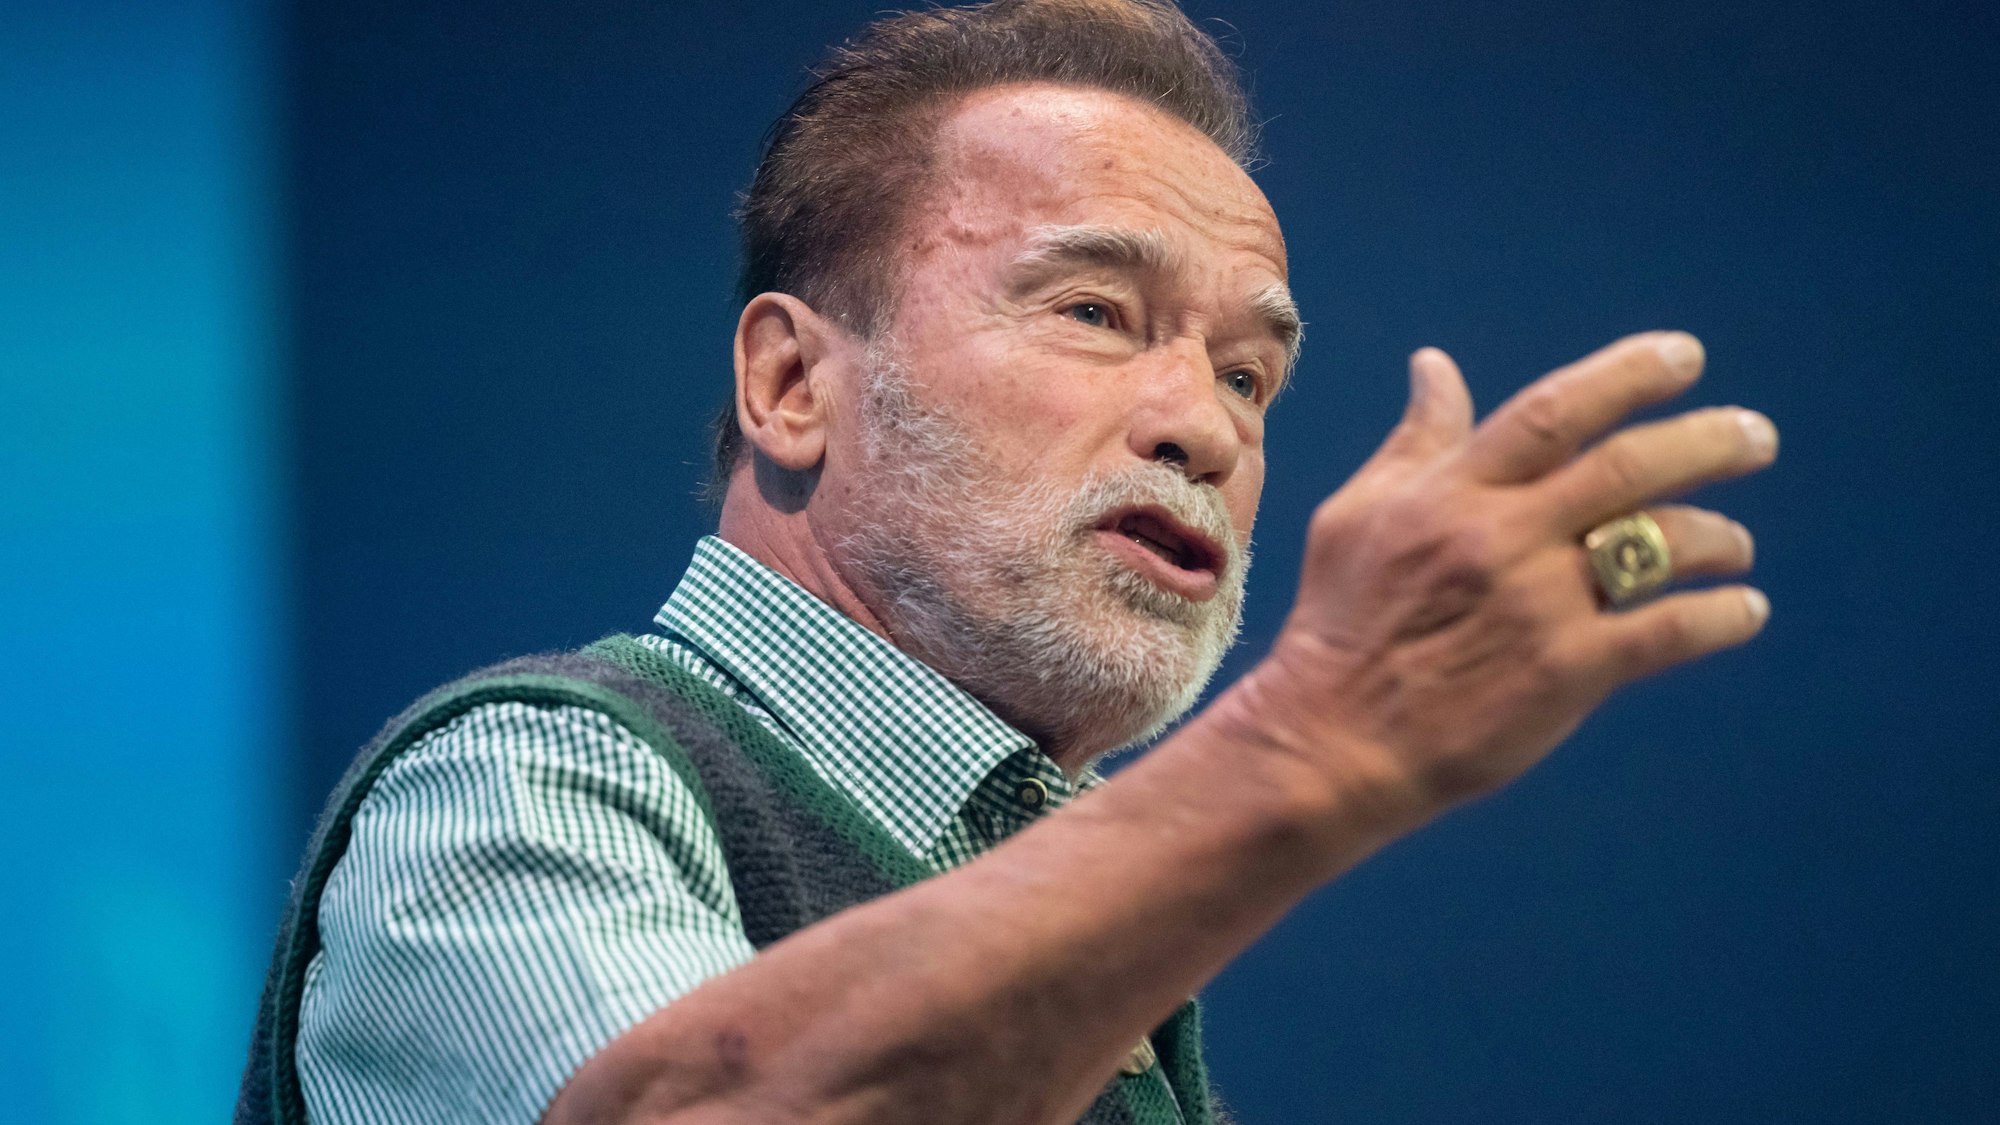 Arnold Schwarzenegger, Schauspieler und ehemaliger Gouverneur von Kalifornien, steht auf der Bühne.